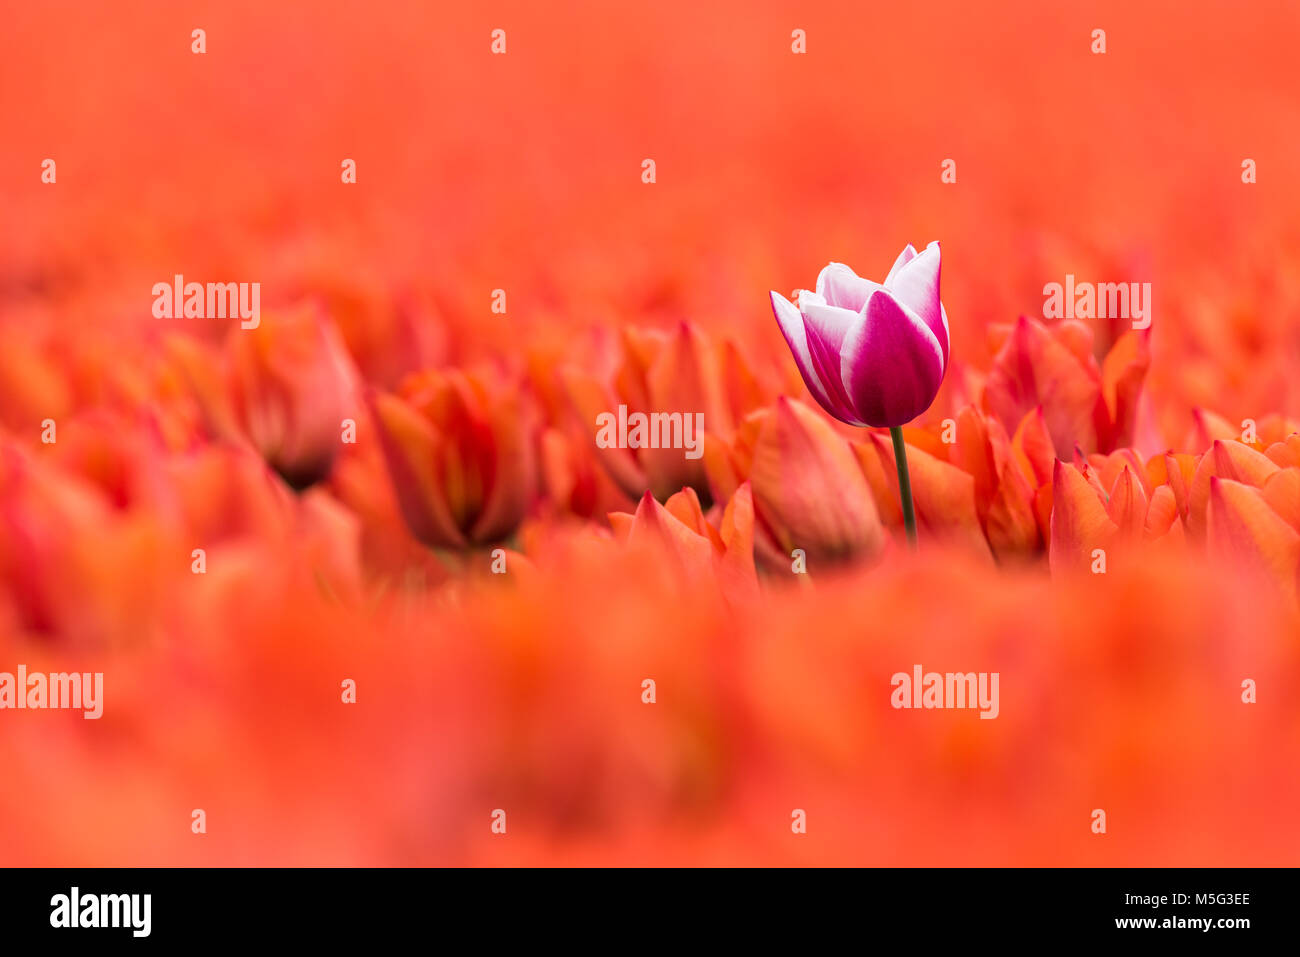 Un mauve avec white tulip est debout dans un champ de tulipes orange en pleine floraison. Le seul tulip est un peu plus élevé que celui de l'orange fleurs, wh Banque D'Images